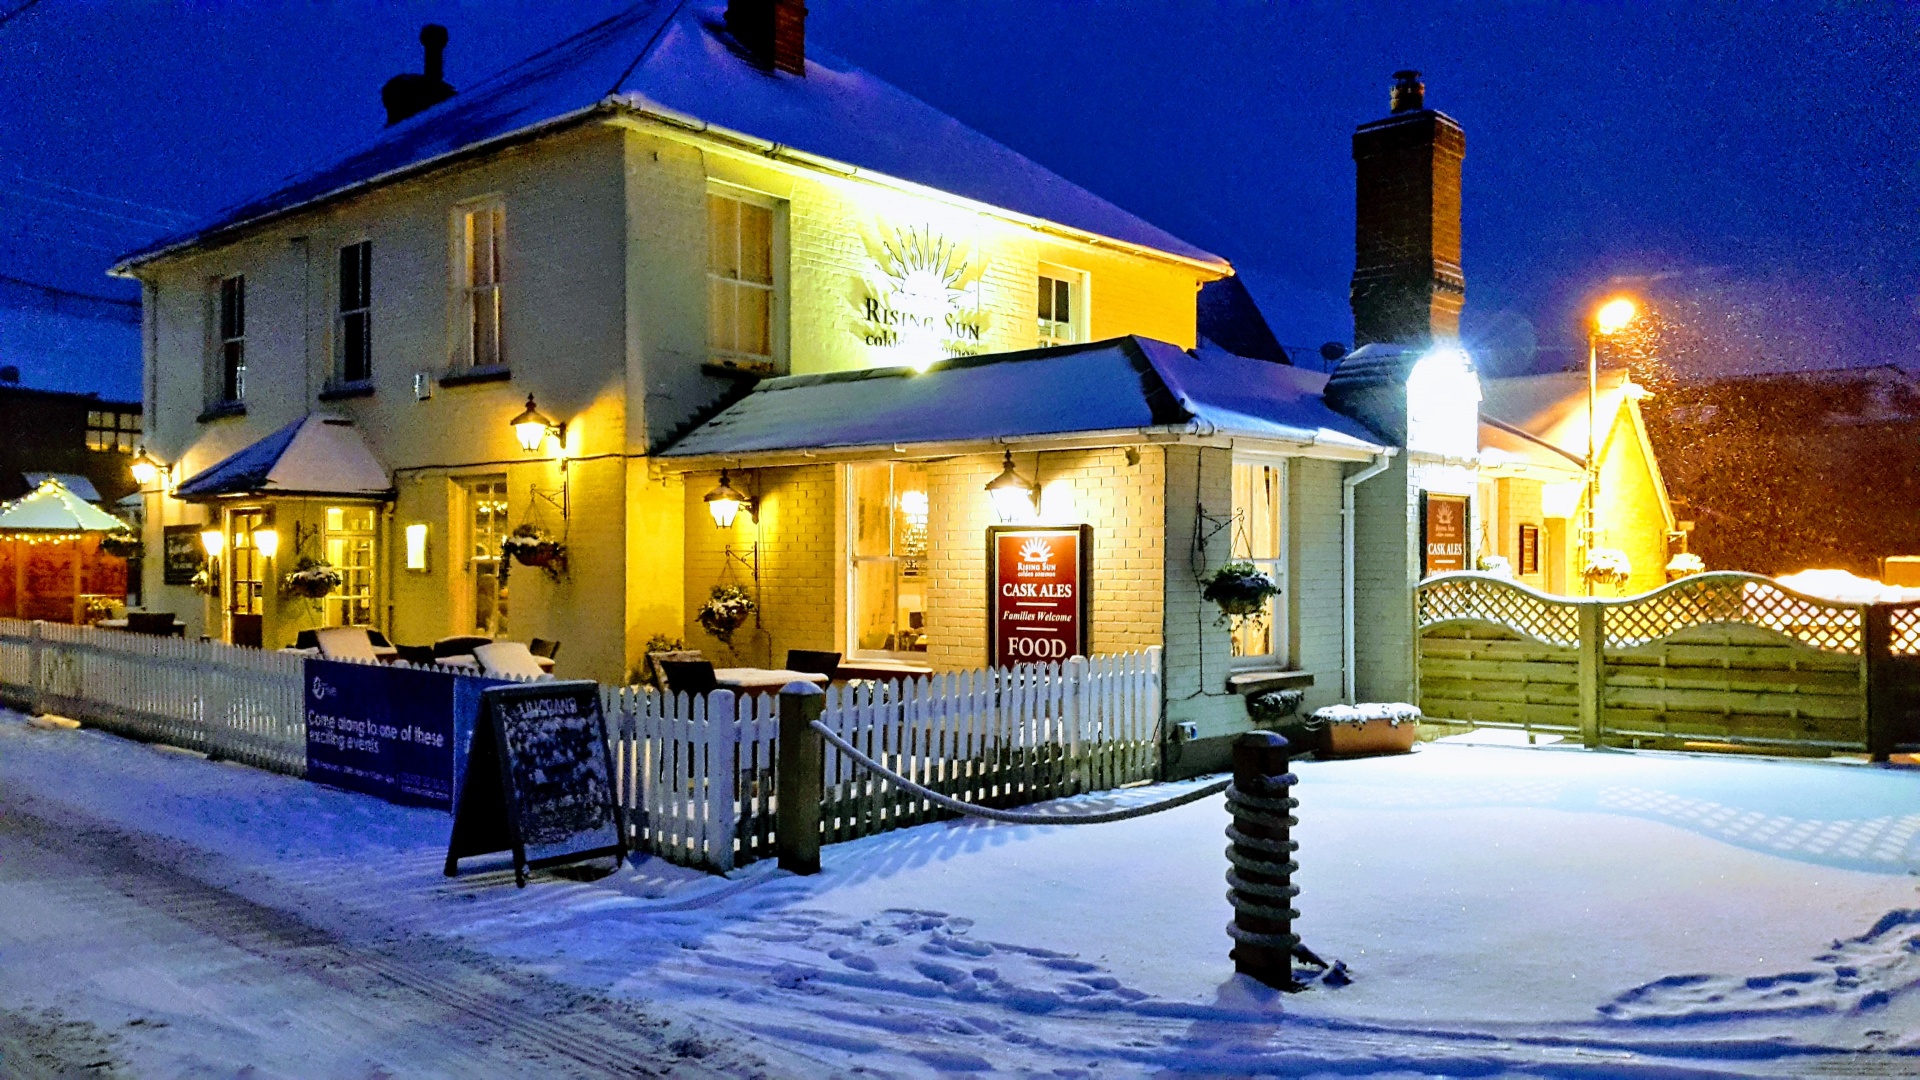 English Pub On A Snowy Night